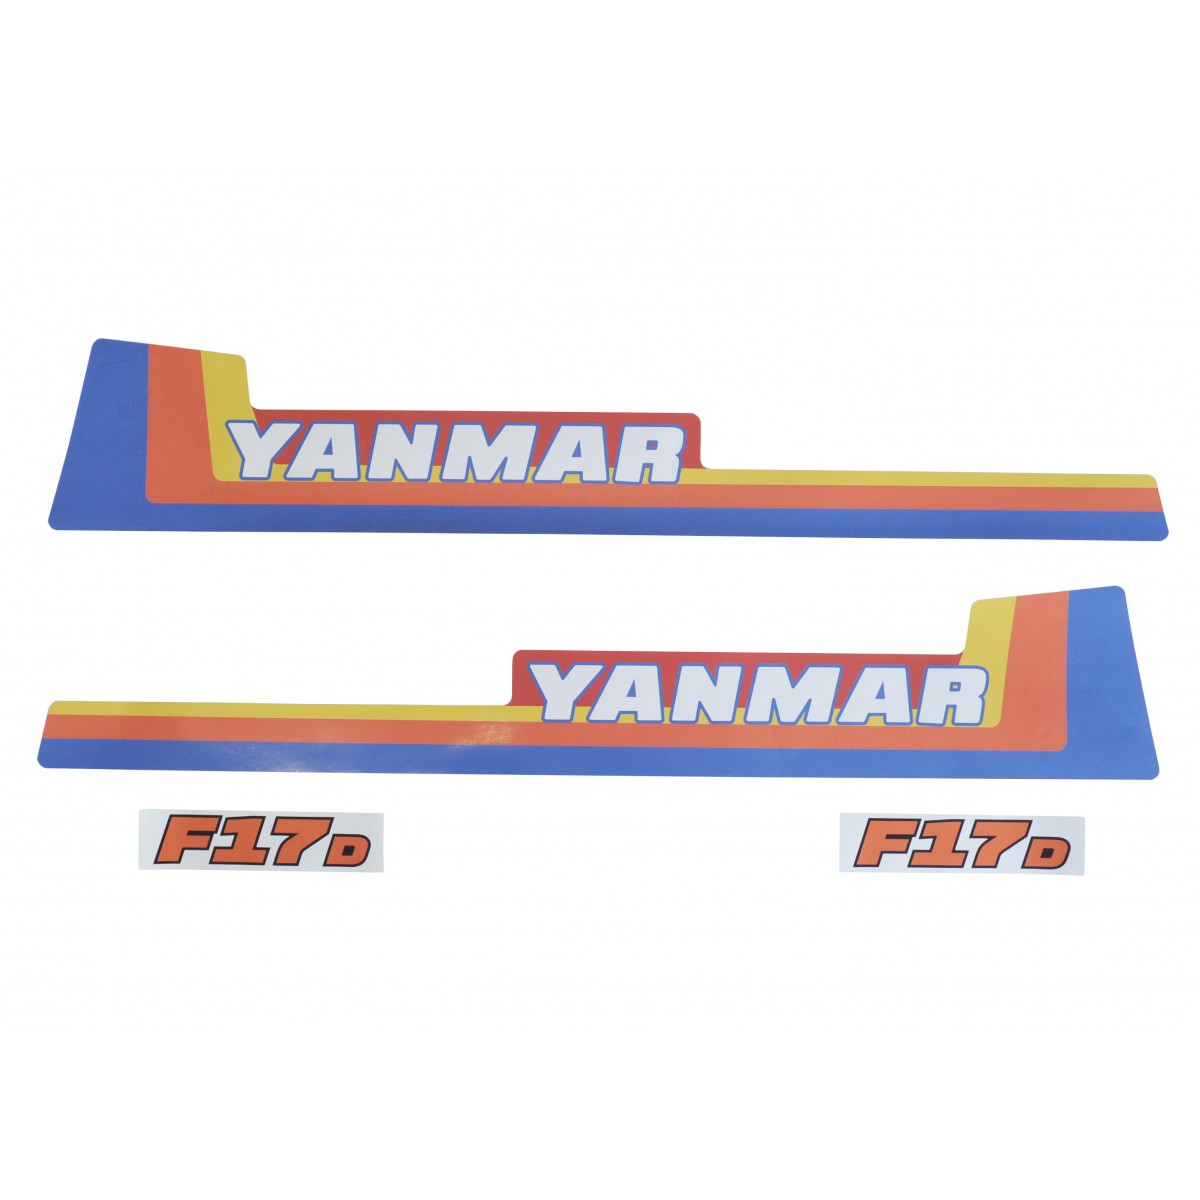 Obtisky Yanmar F17D